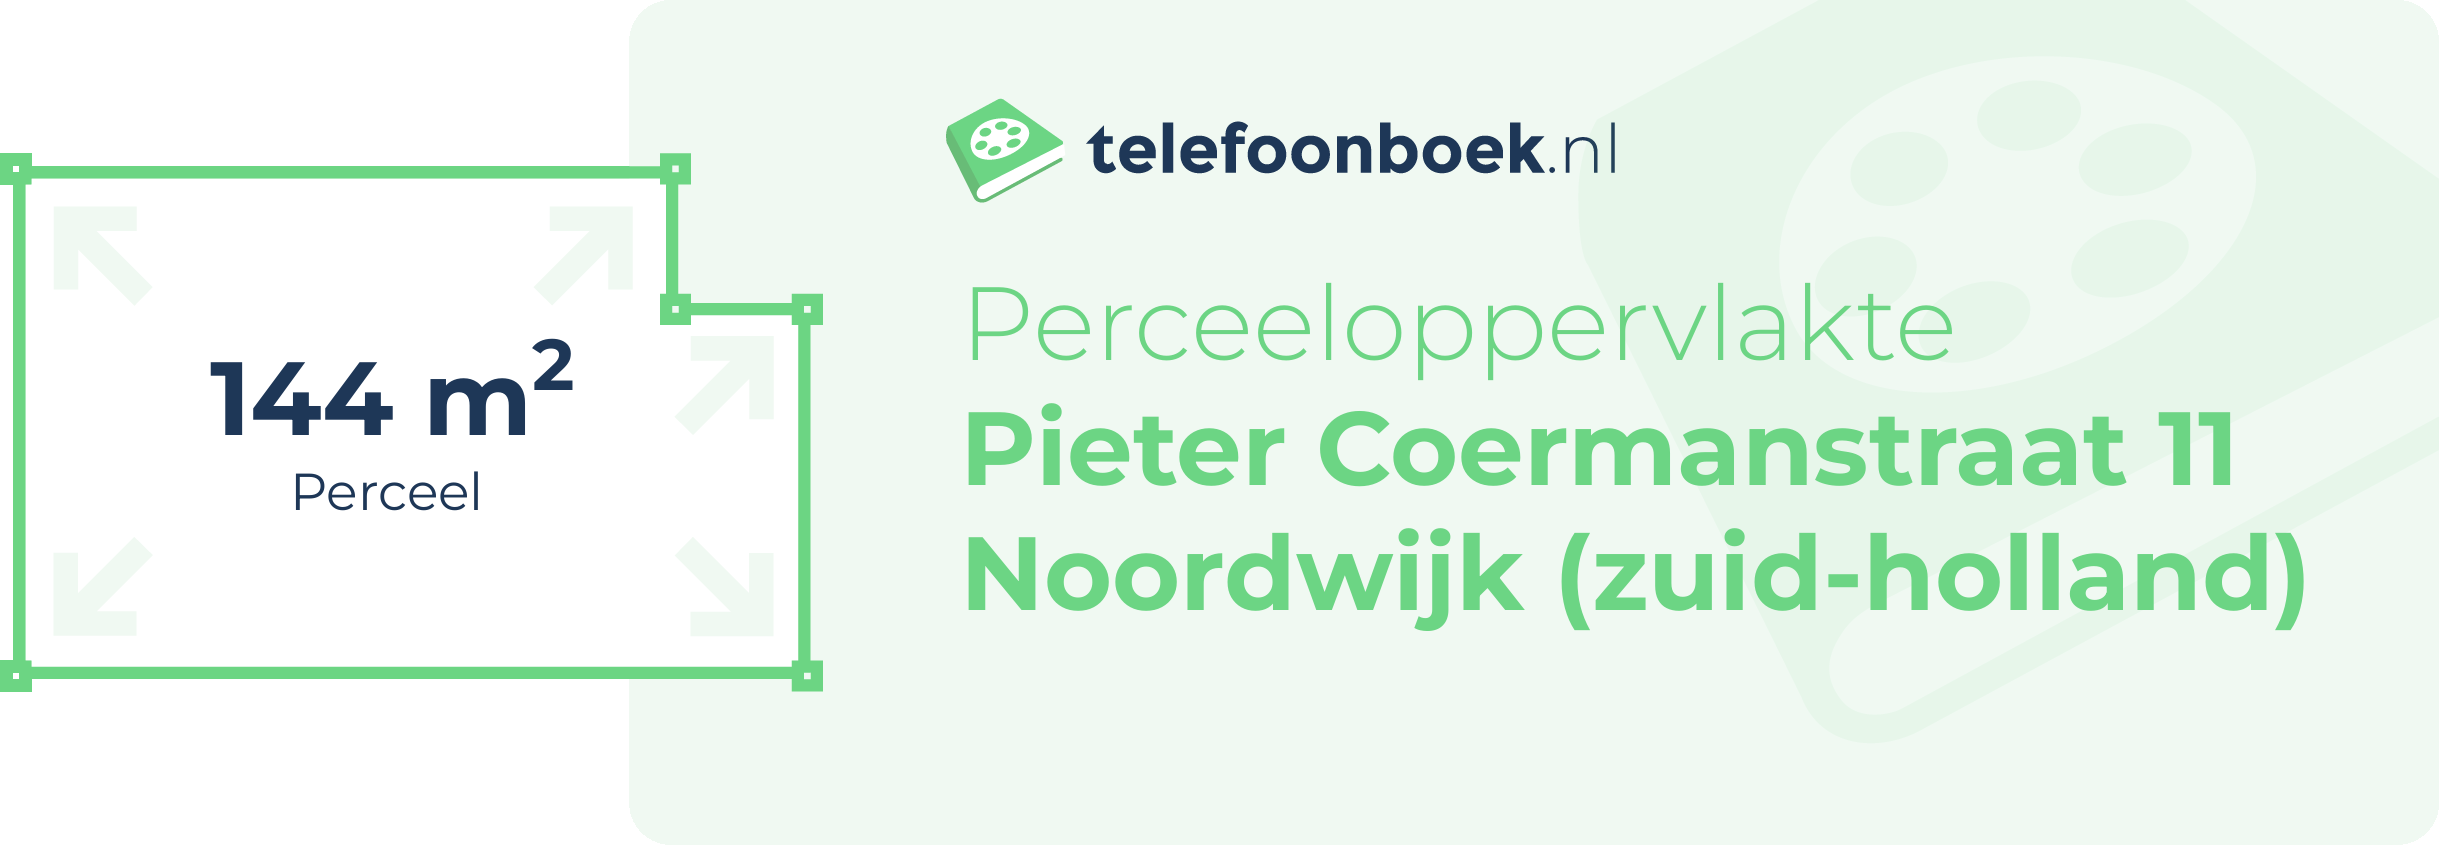 Perceeloppervlakte Pieter Coermanstraat 11 Noordwijk (Zuid-Holland)